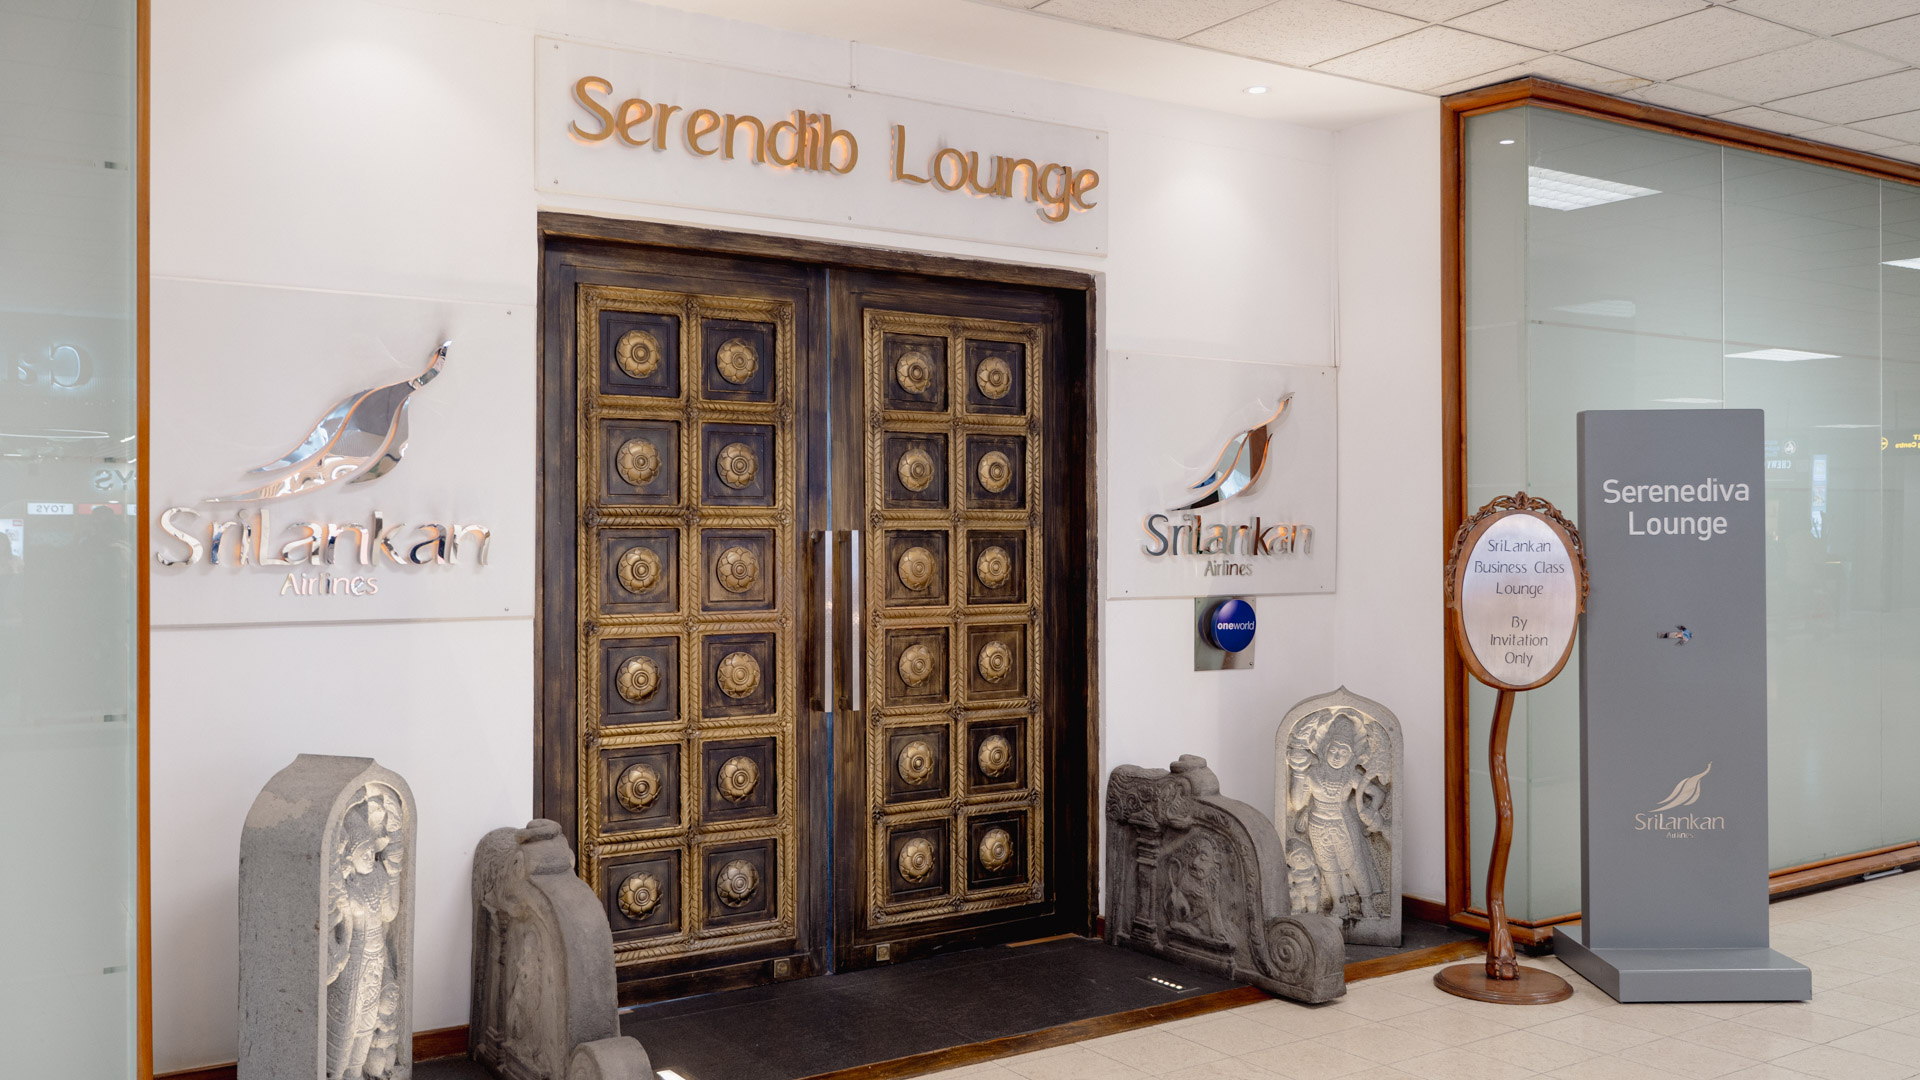 Serendib Lounge entrance